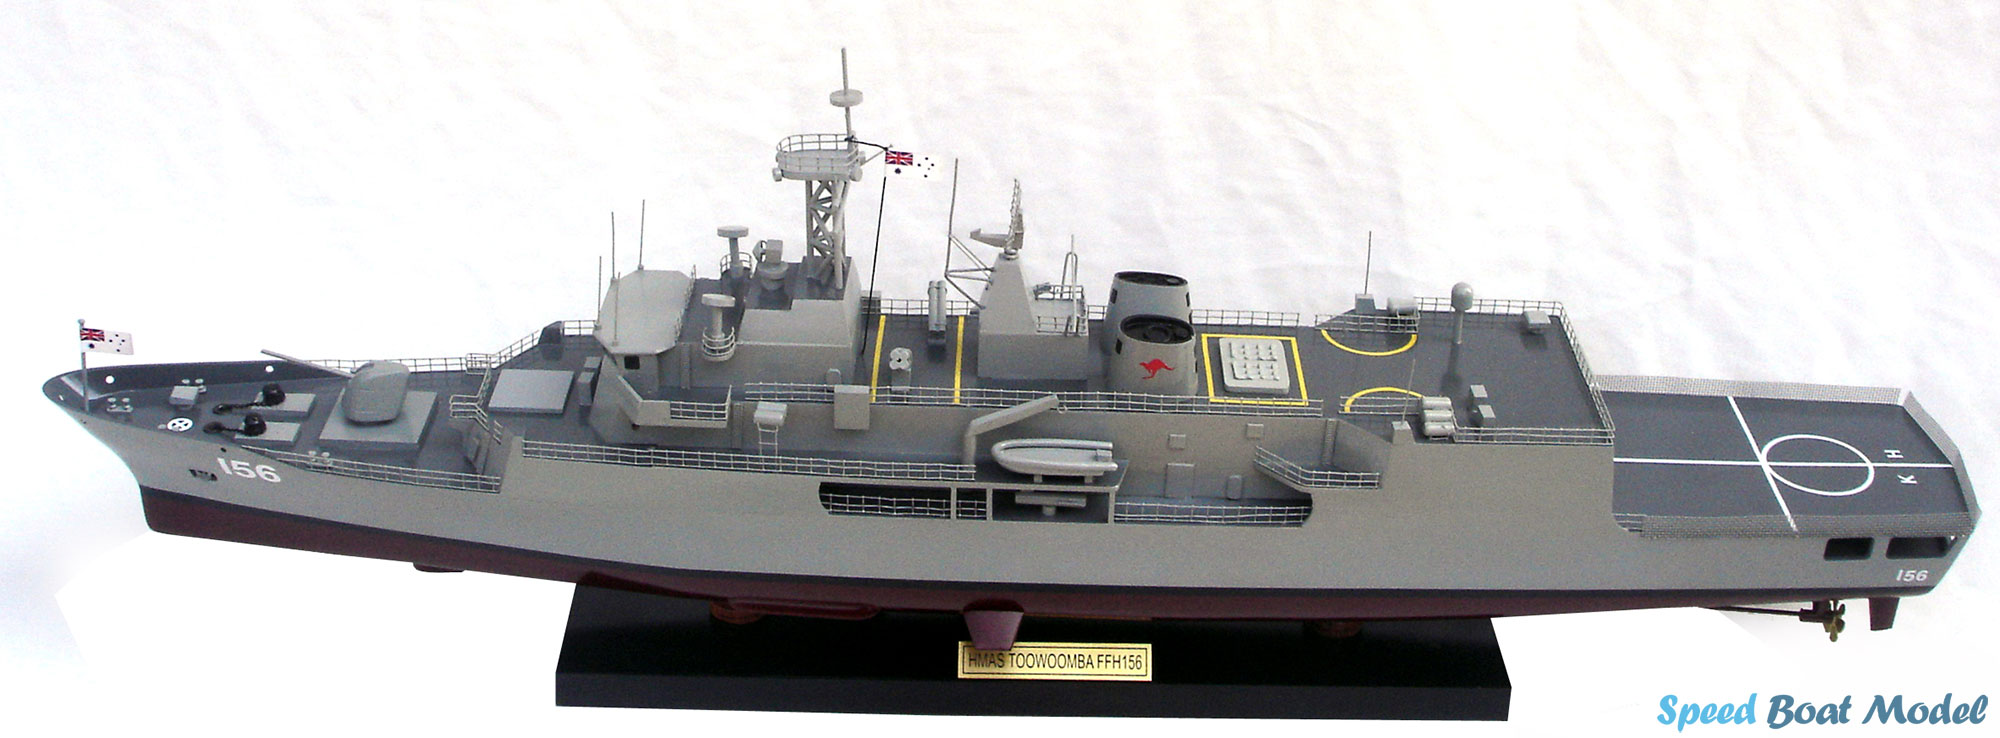 Hmas Toowoomba Ffh 156 Warship Model 31.5